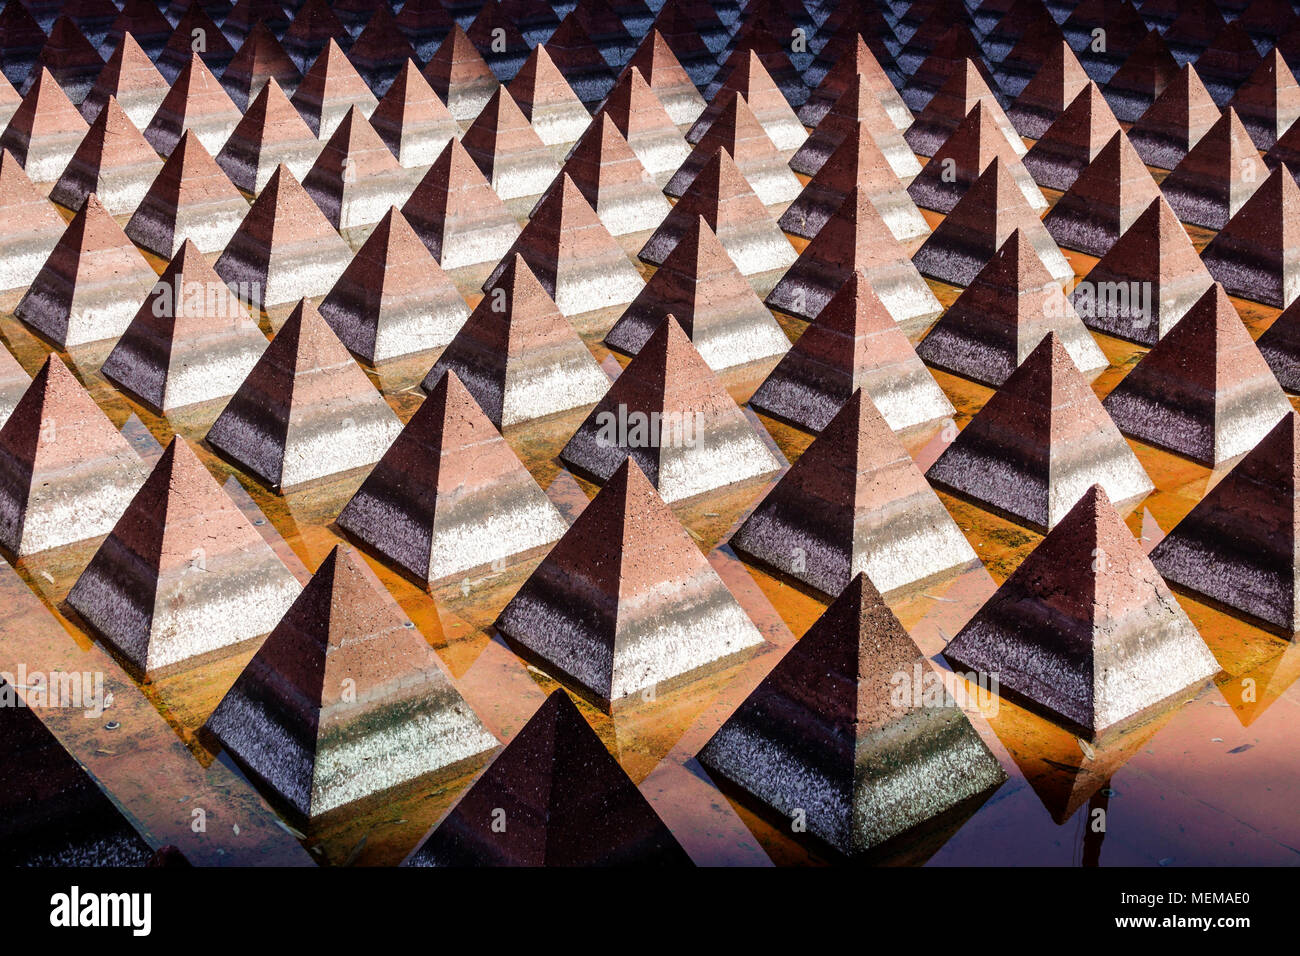 Mexico City, Mexican Centro historico historisches Zentrum, Plaza Juarez öffentliche Kunstbrunnen, Vicente Rojo Pyramiden geometrische Formen, Stockfoto